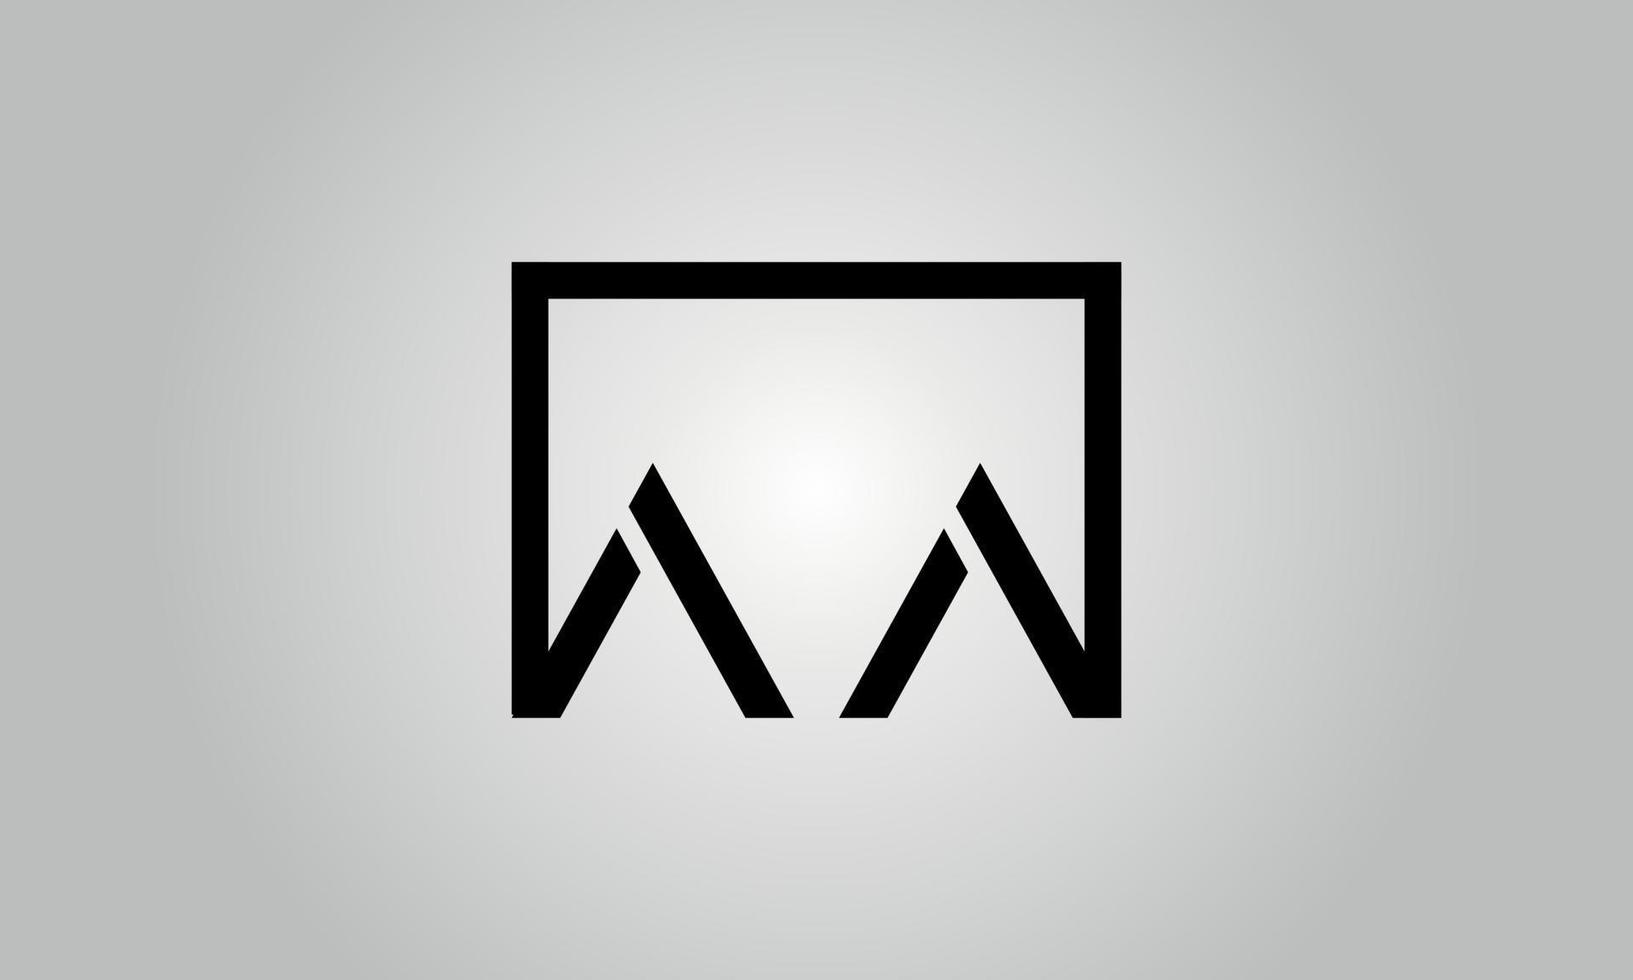 Buchstabe aa-Logo-Design. aa-Logo mit quadratischer Form in schwarzen Farben Vektor kostenlose Vektorvorlage.